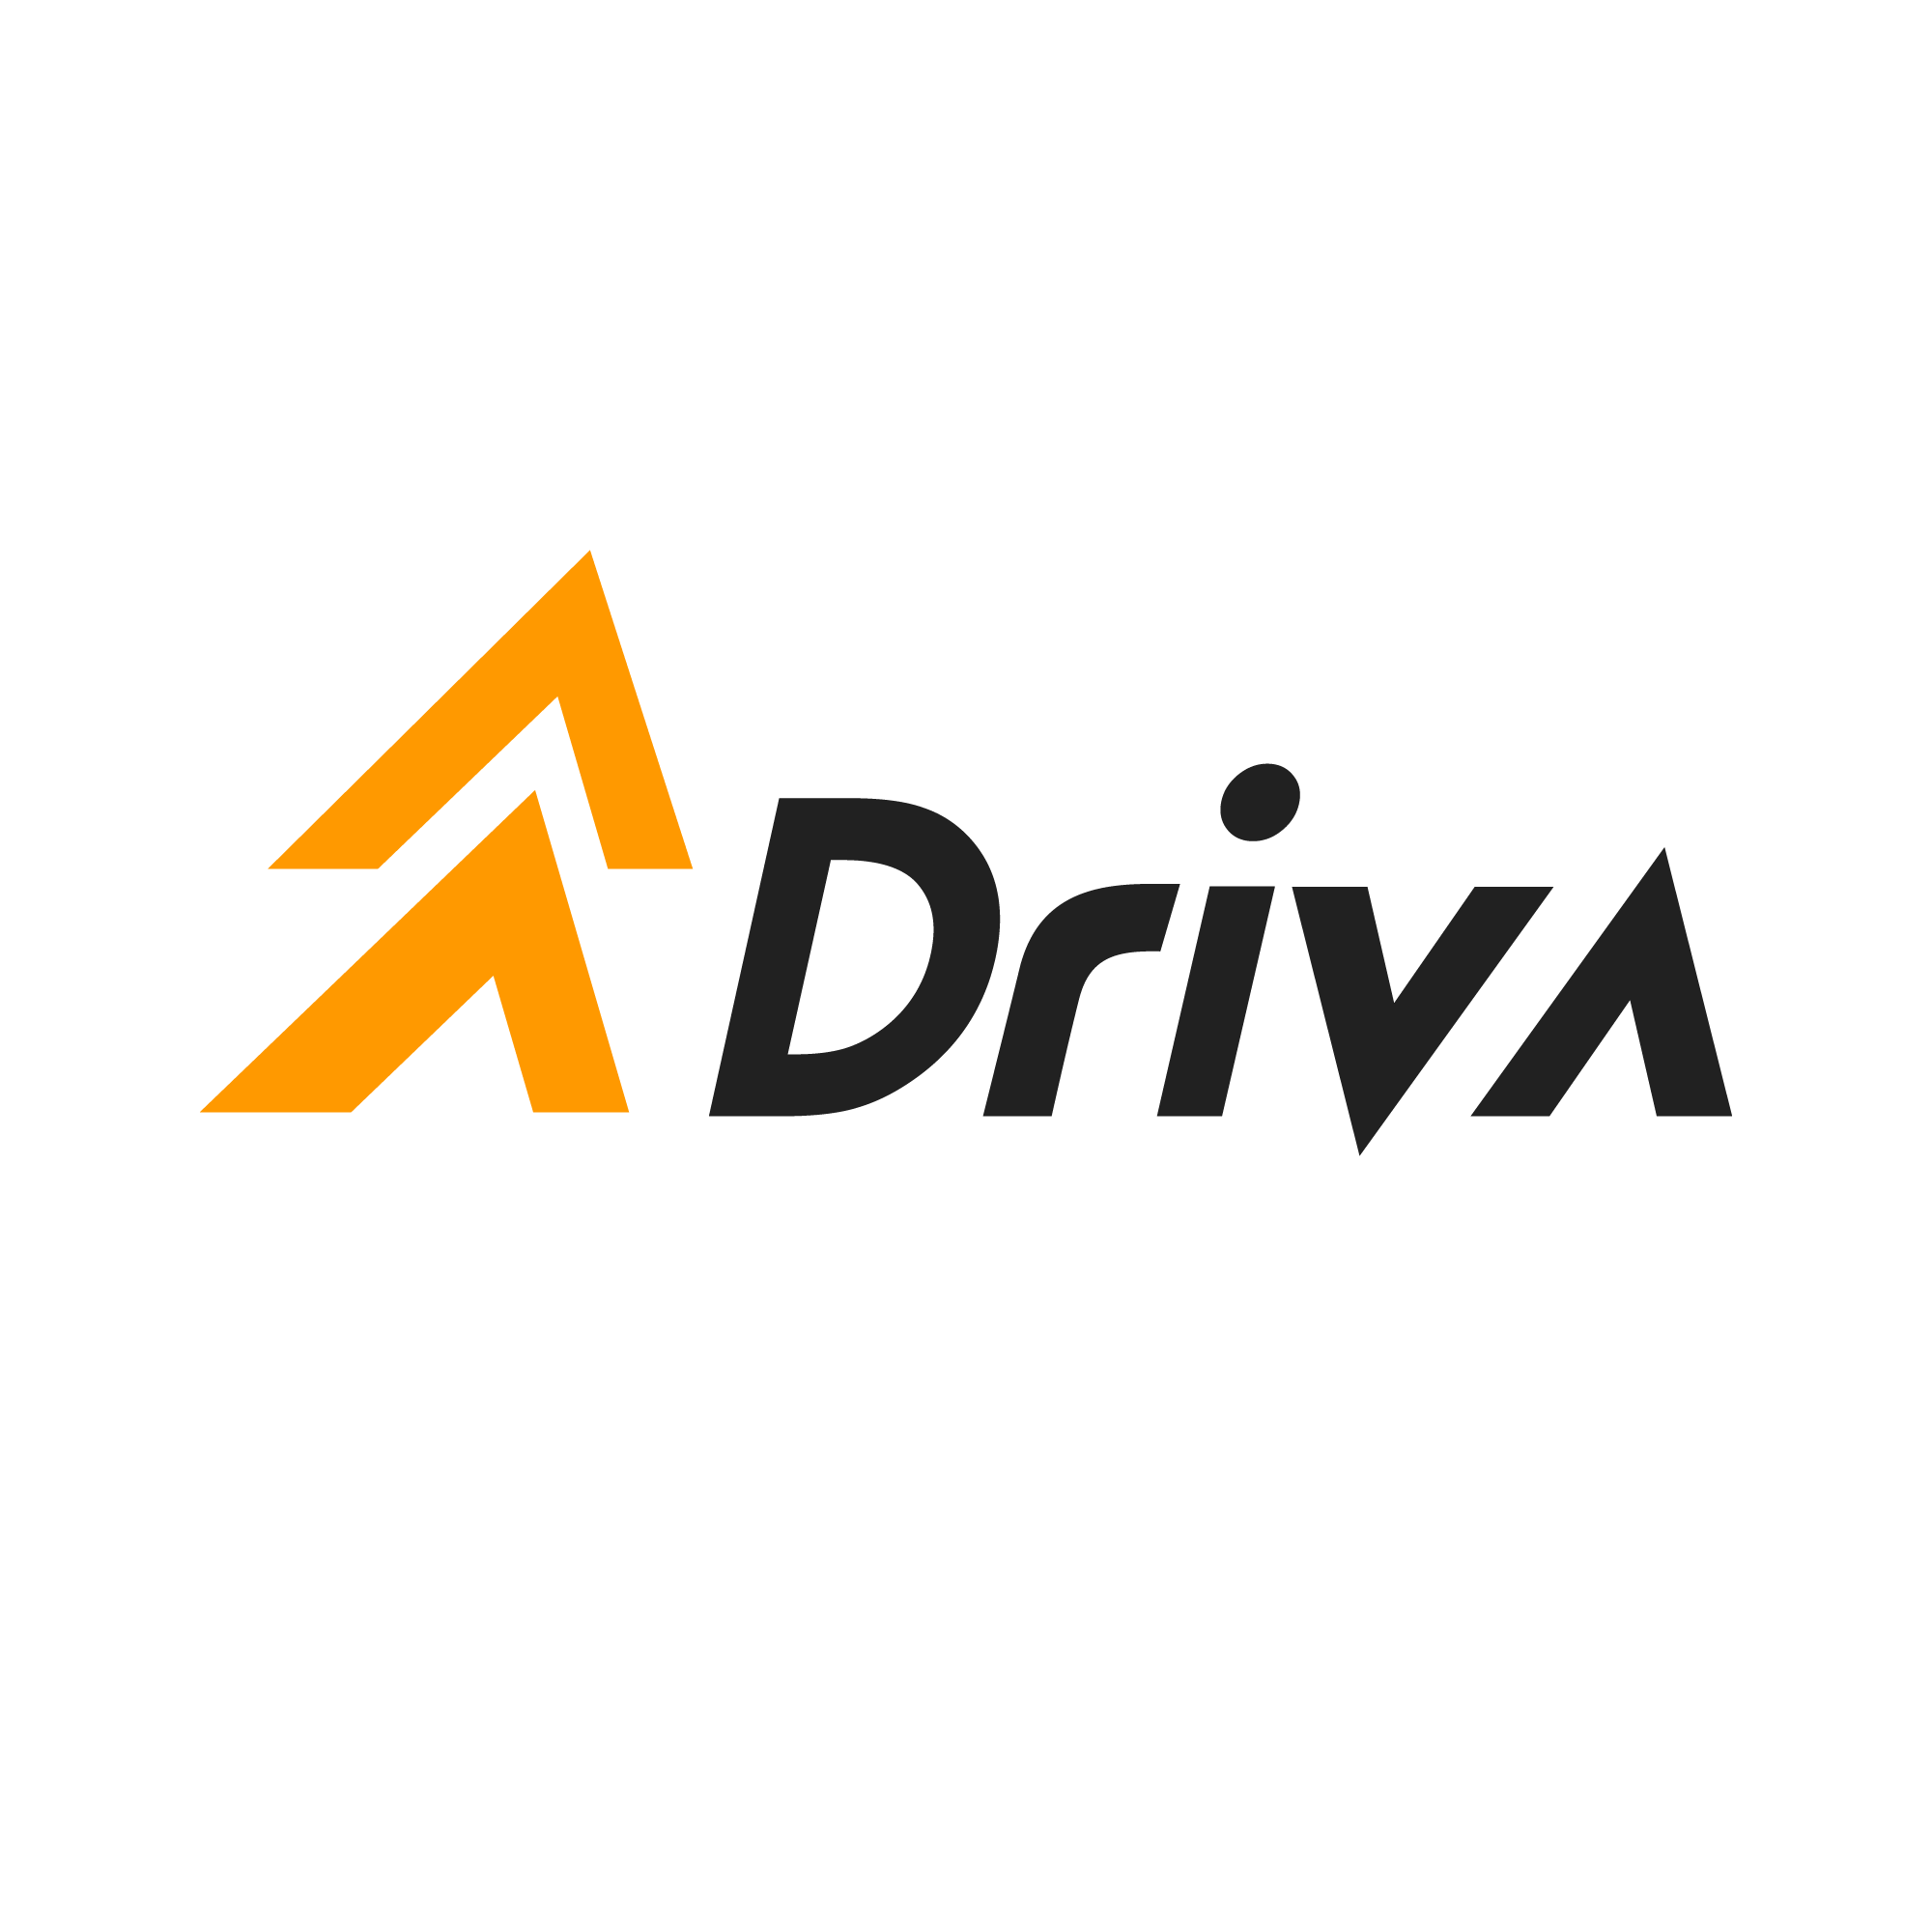 Company Logo For Driva'